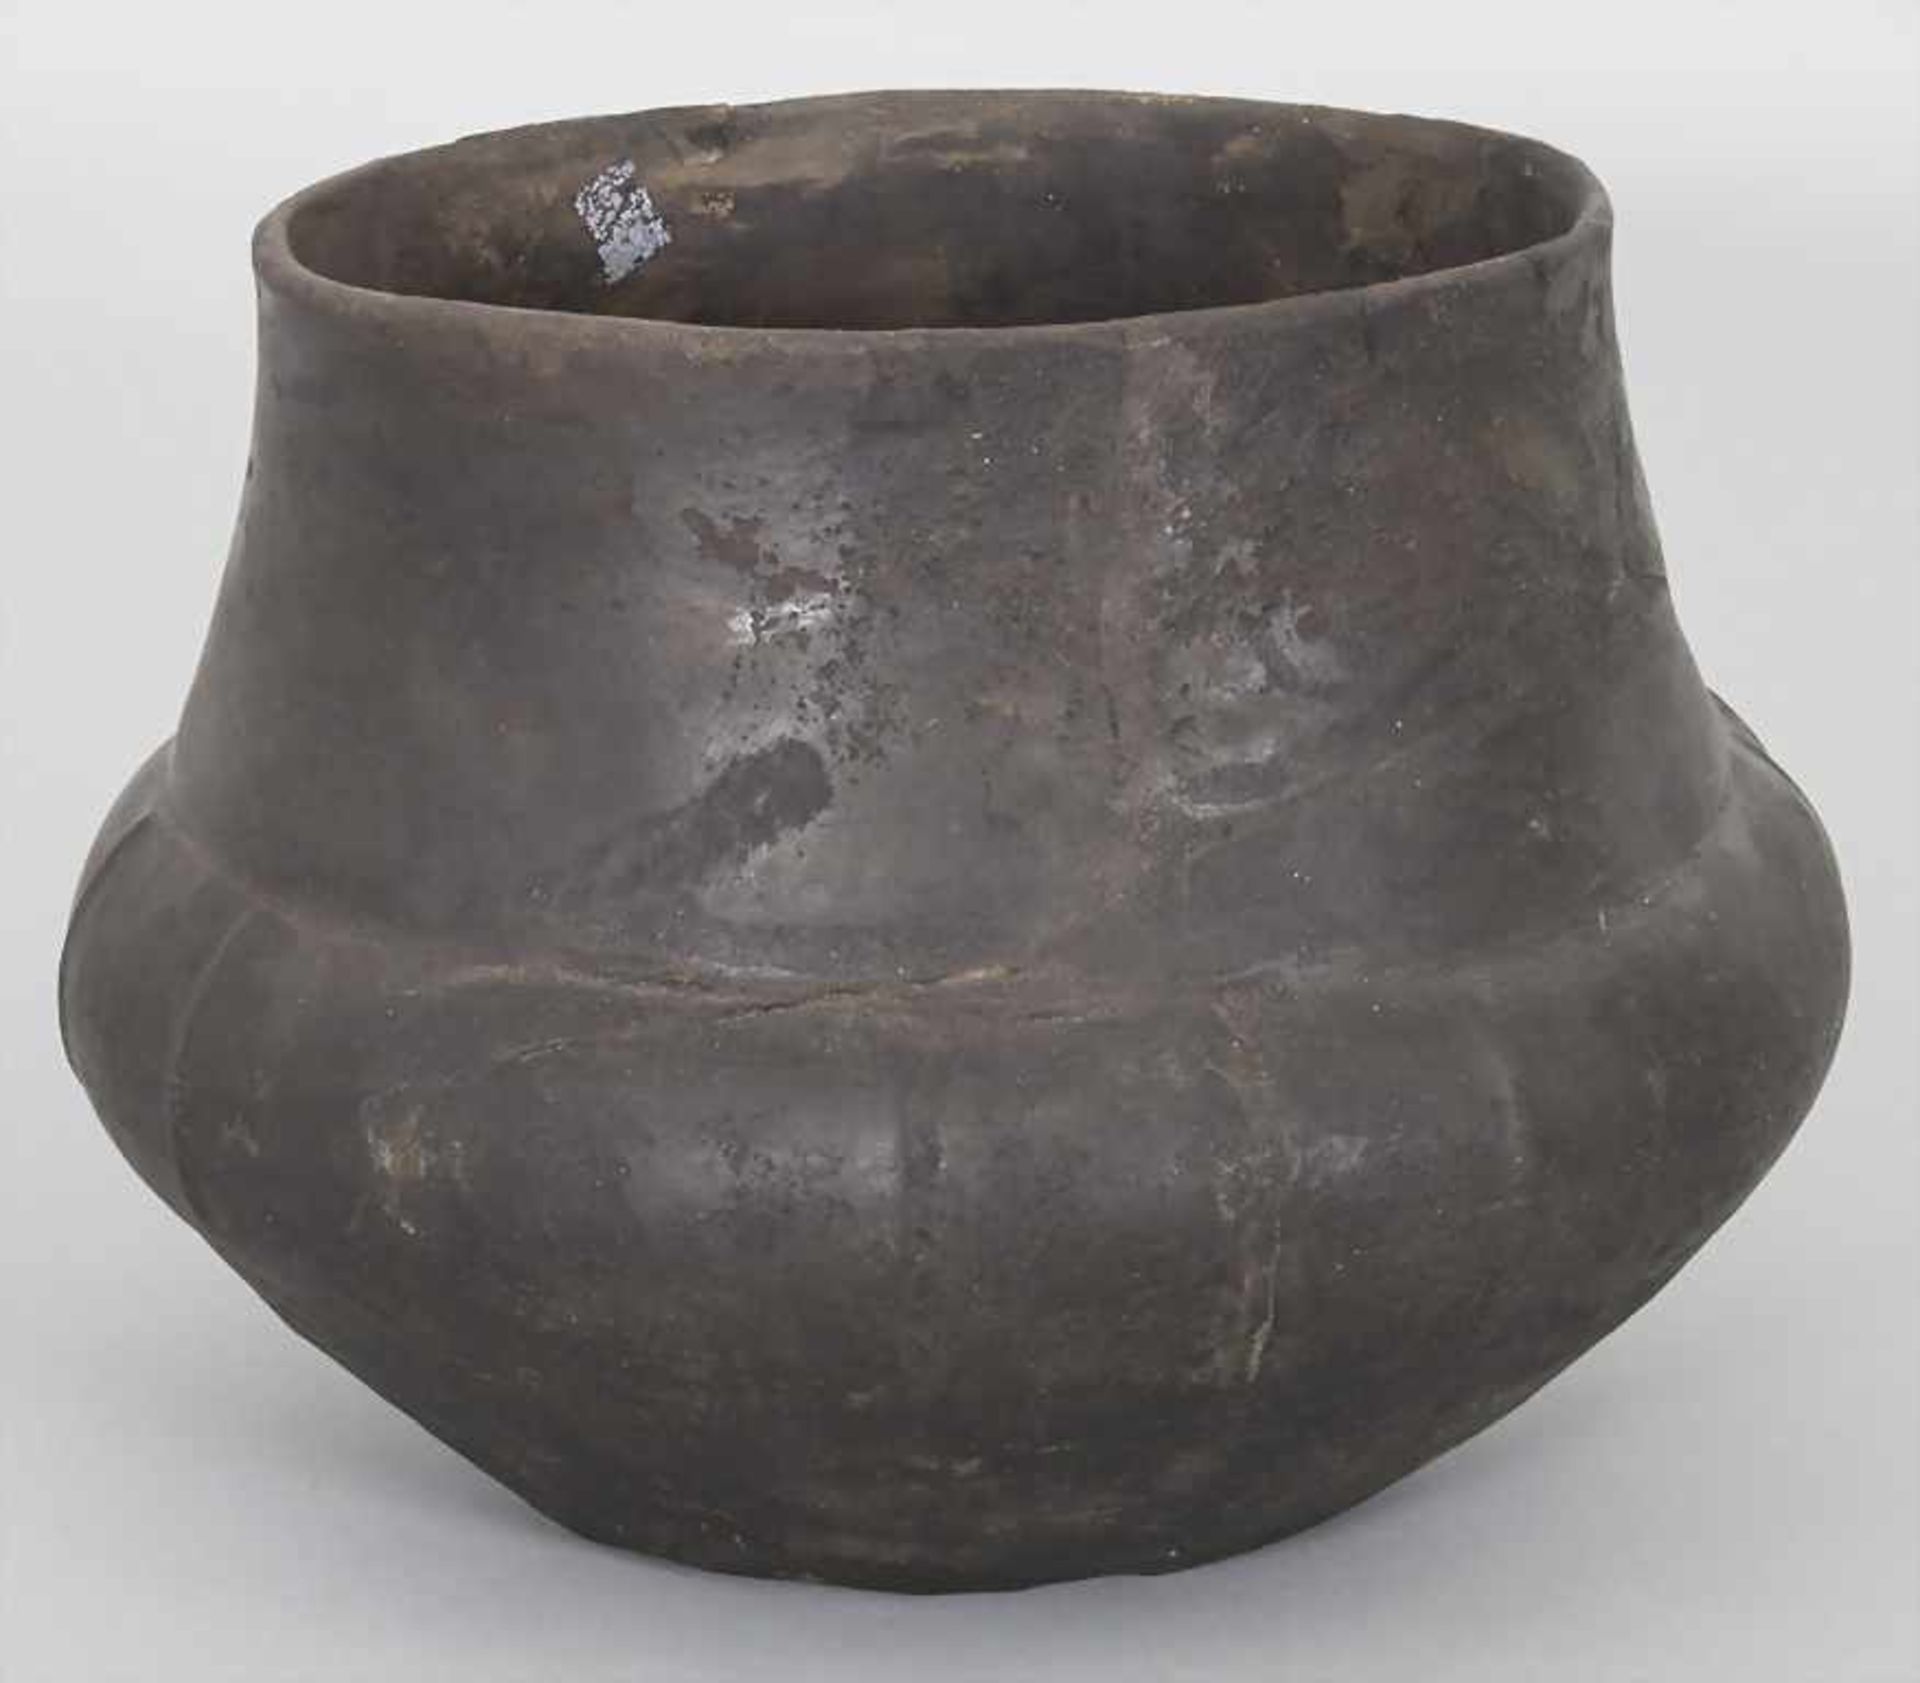 Bronzezeitliches Keramik-Gefäß / A Bronze Age ceramic vessel, Lausitzer Kultur, 9. - 6. Jh. v. Chr. - Image 3 of 6